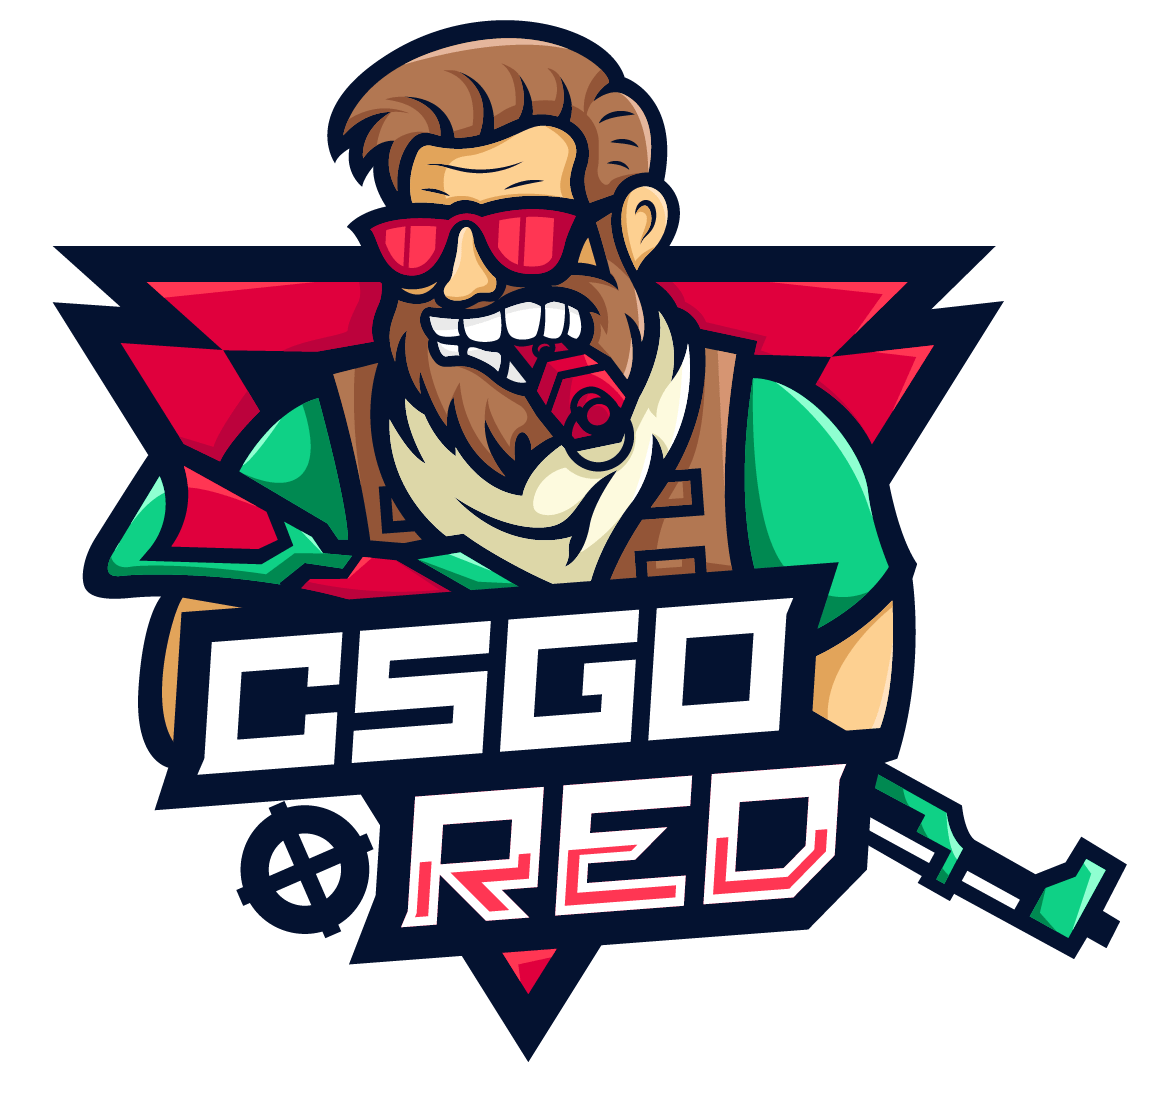 CSGO.RED Logo